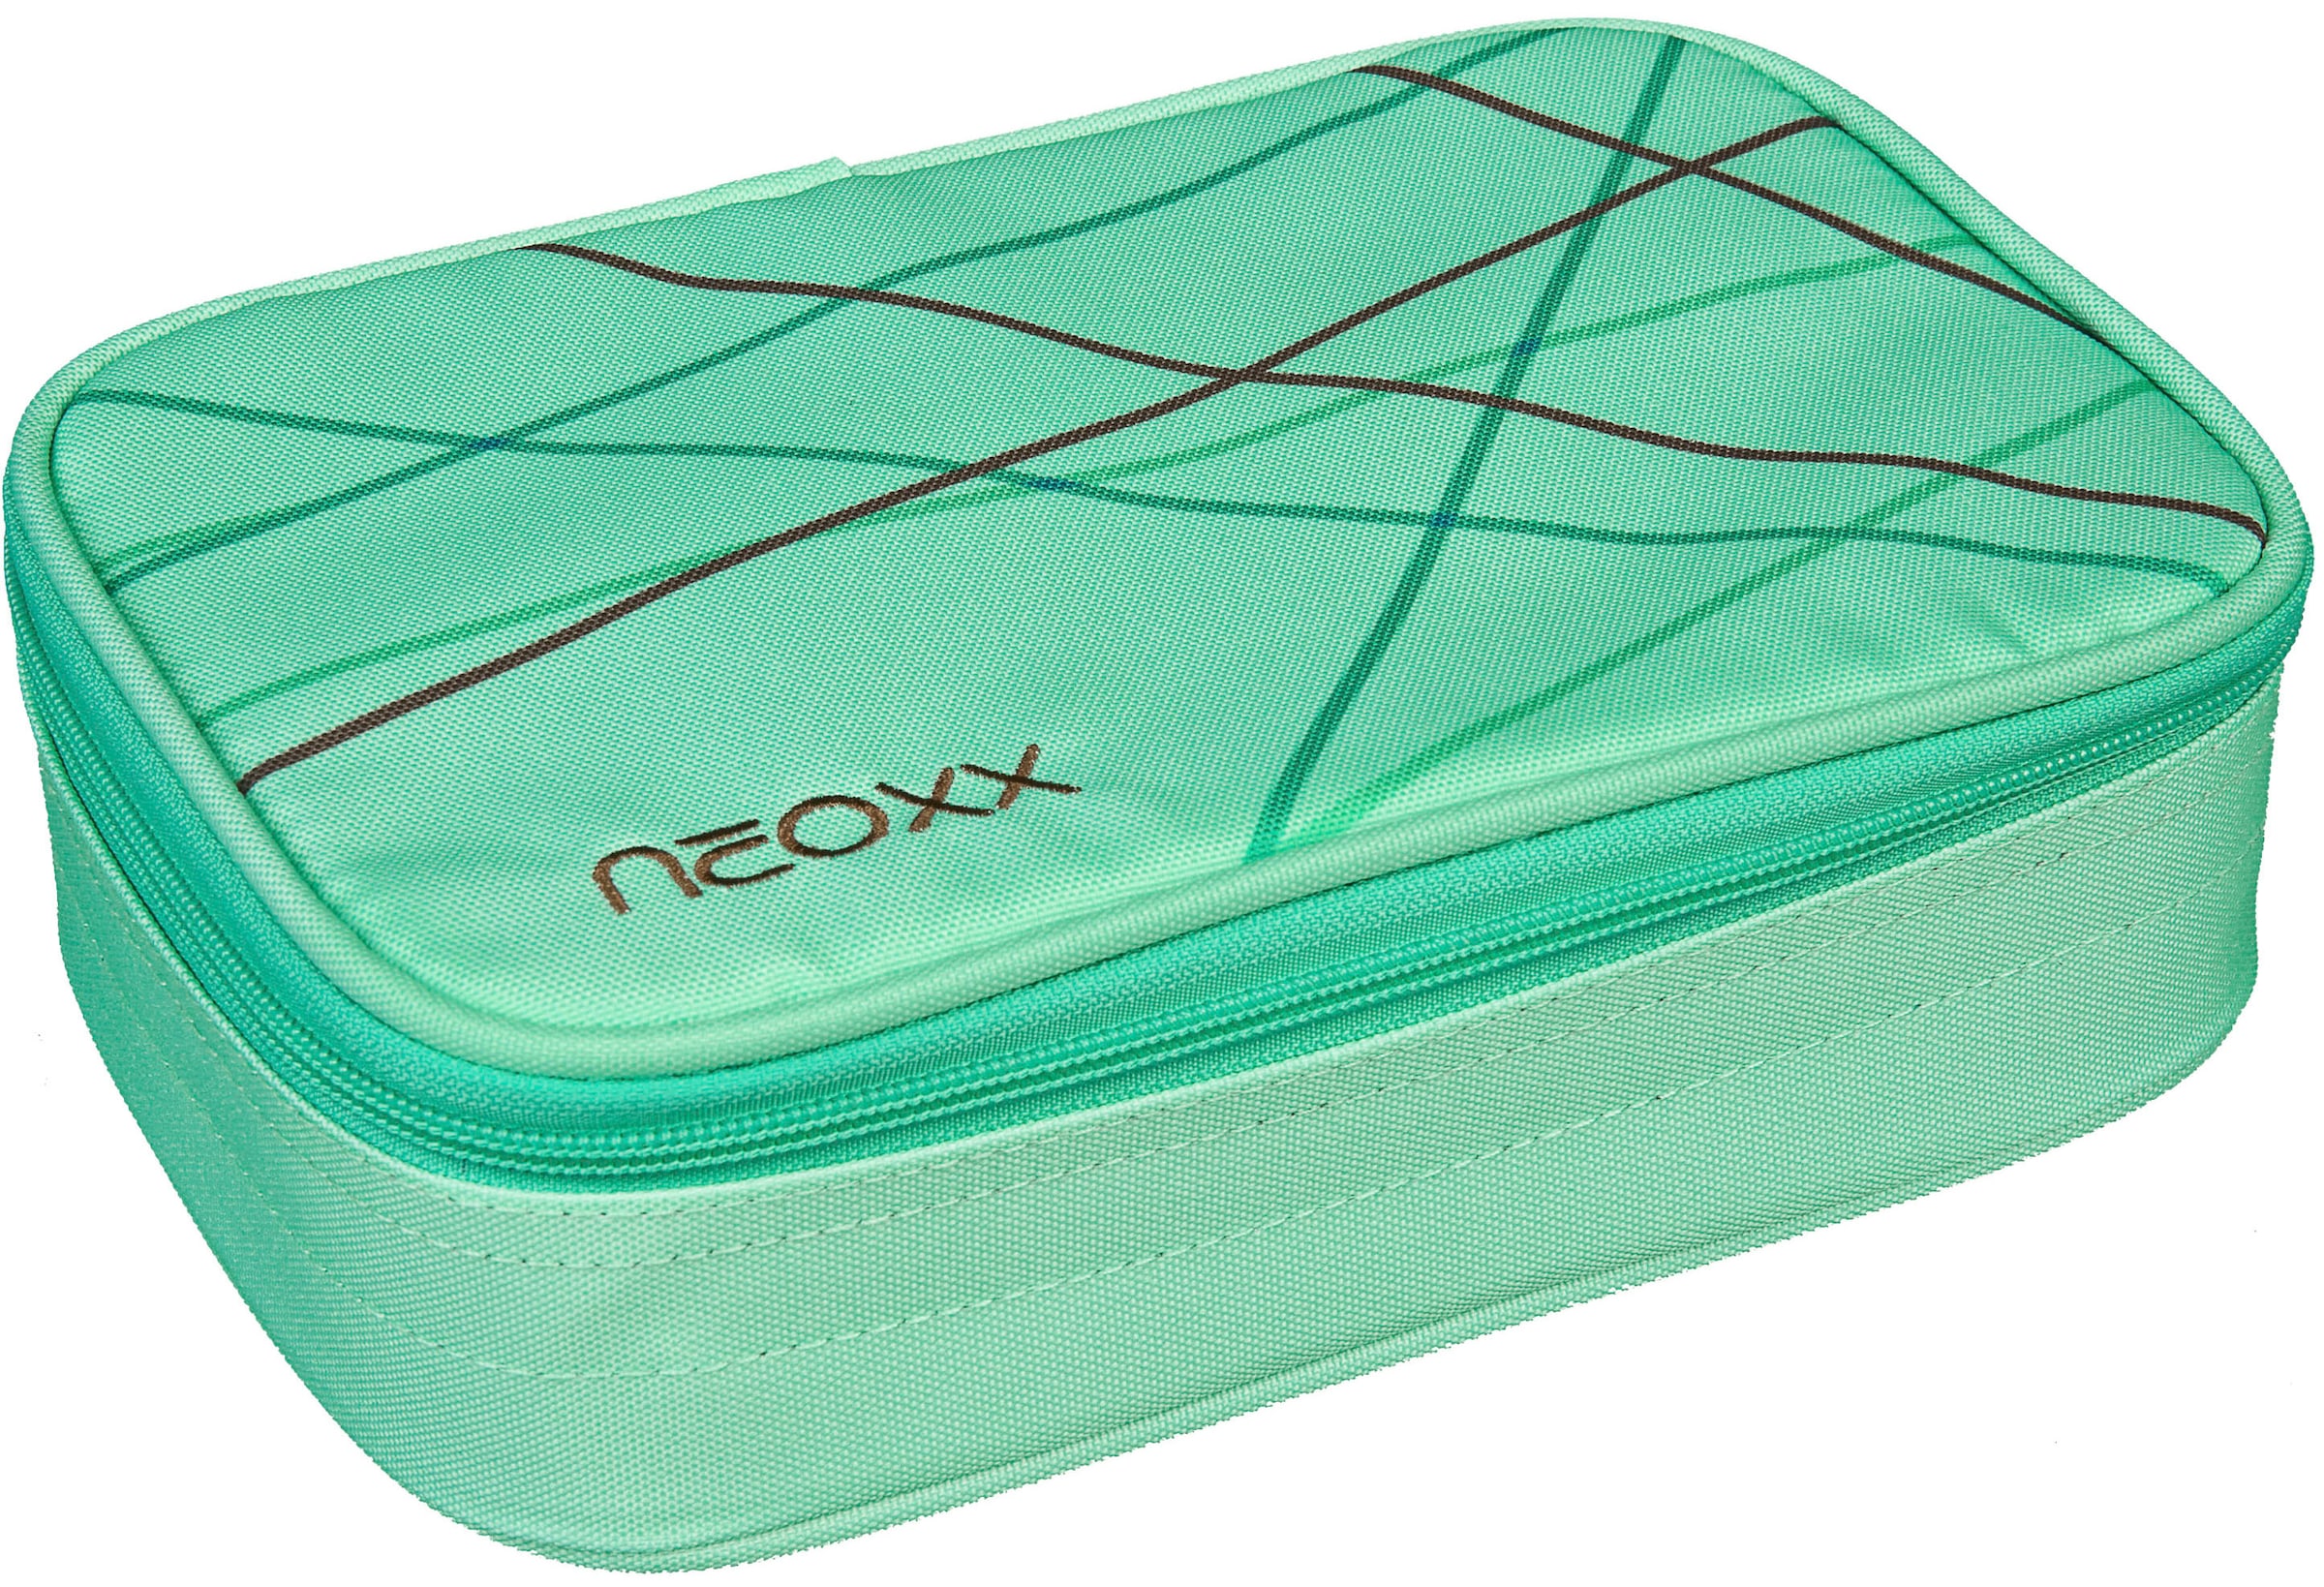 neoxx Schreibgeräteetui »Schlamperbox, Dunk, Mint to be«, teilweise aus recyceltem Material